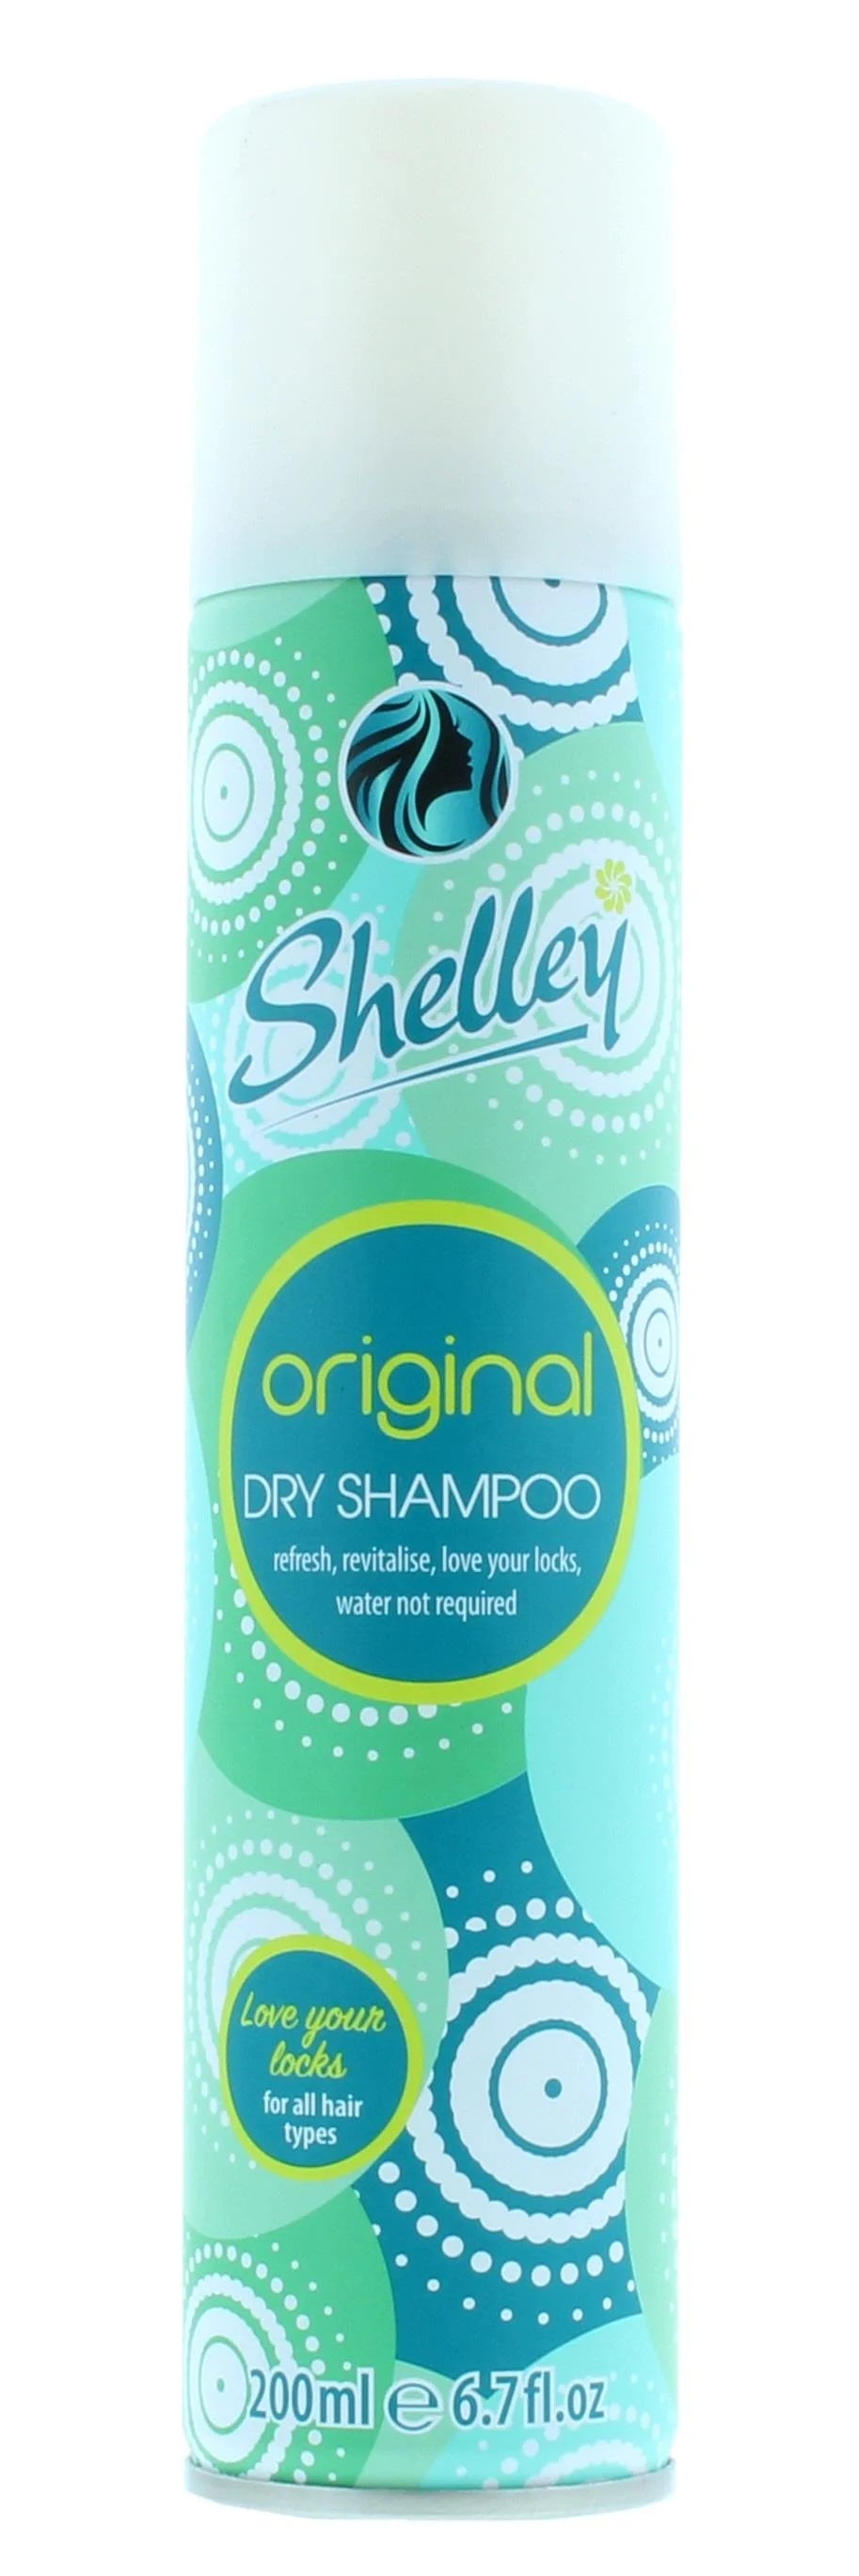 Shelley Dry Shampoo Original